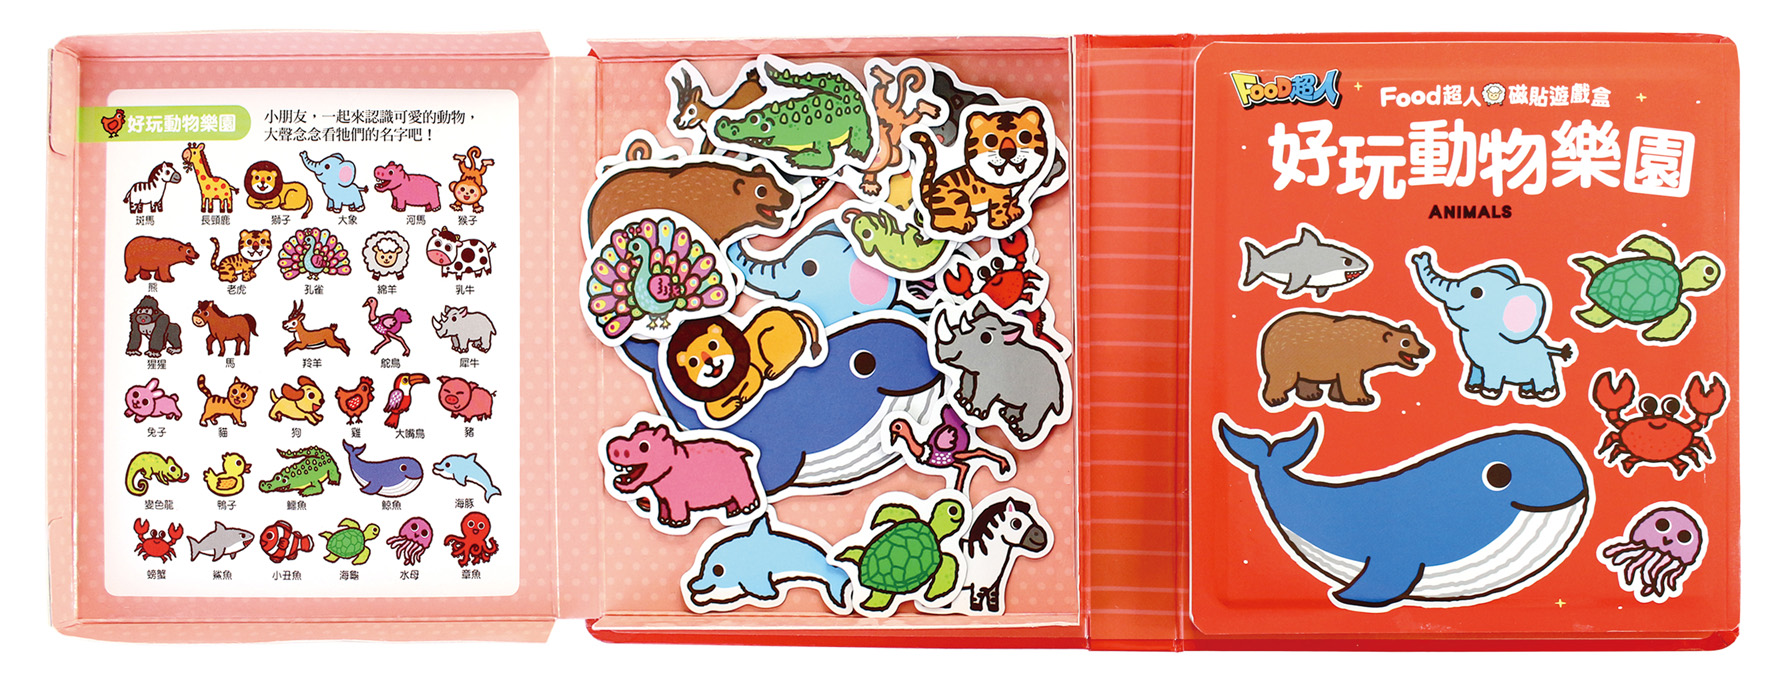 好玩動物樂園-FOOD超人磁貼遊戲盒